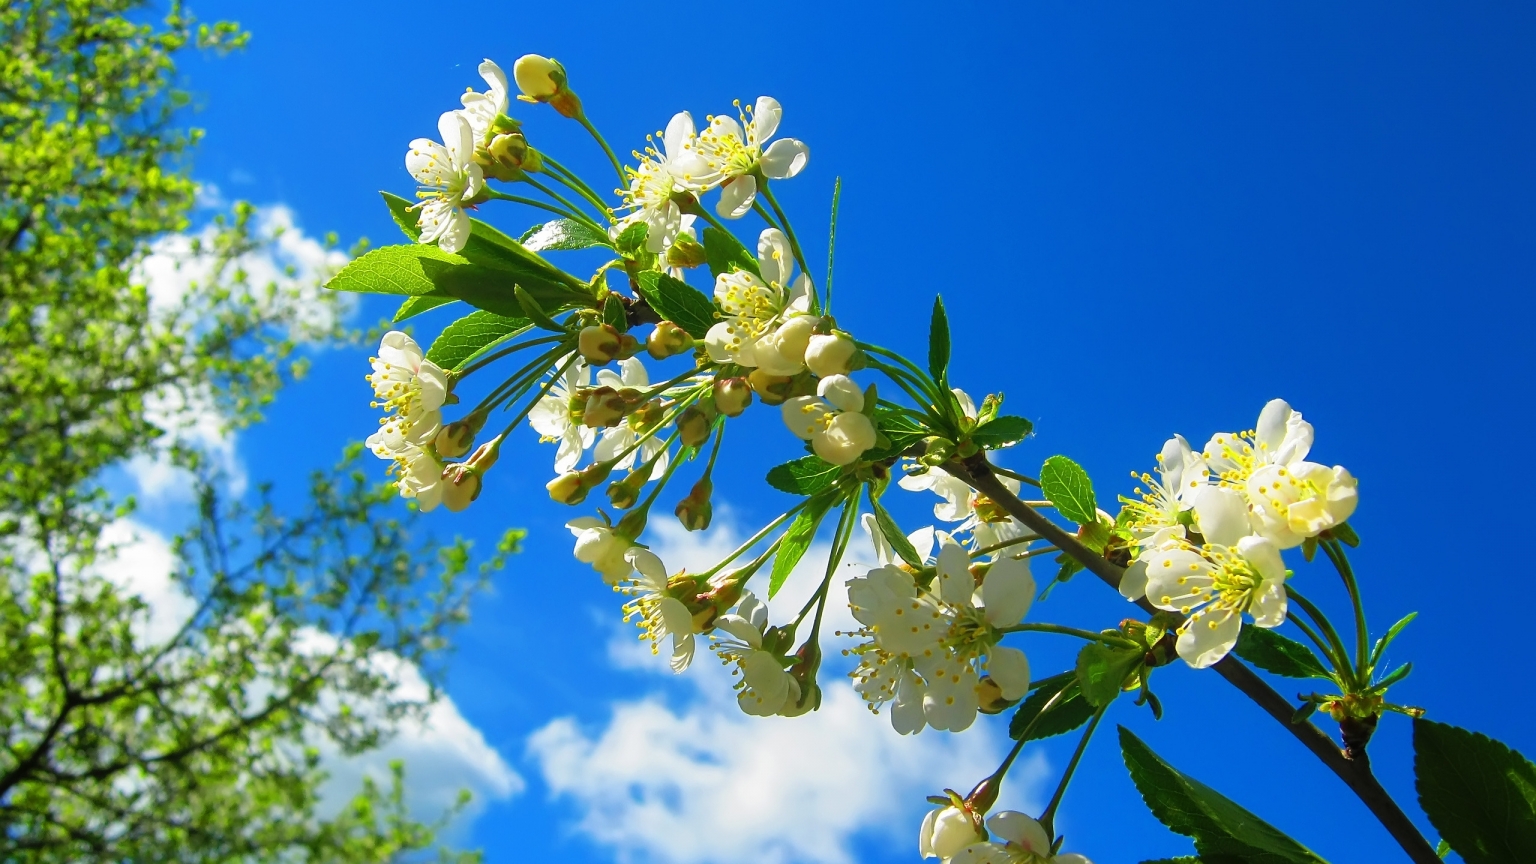 Spring Flower Tree for 1536 x 864 HDTV resolution